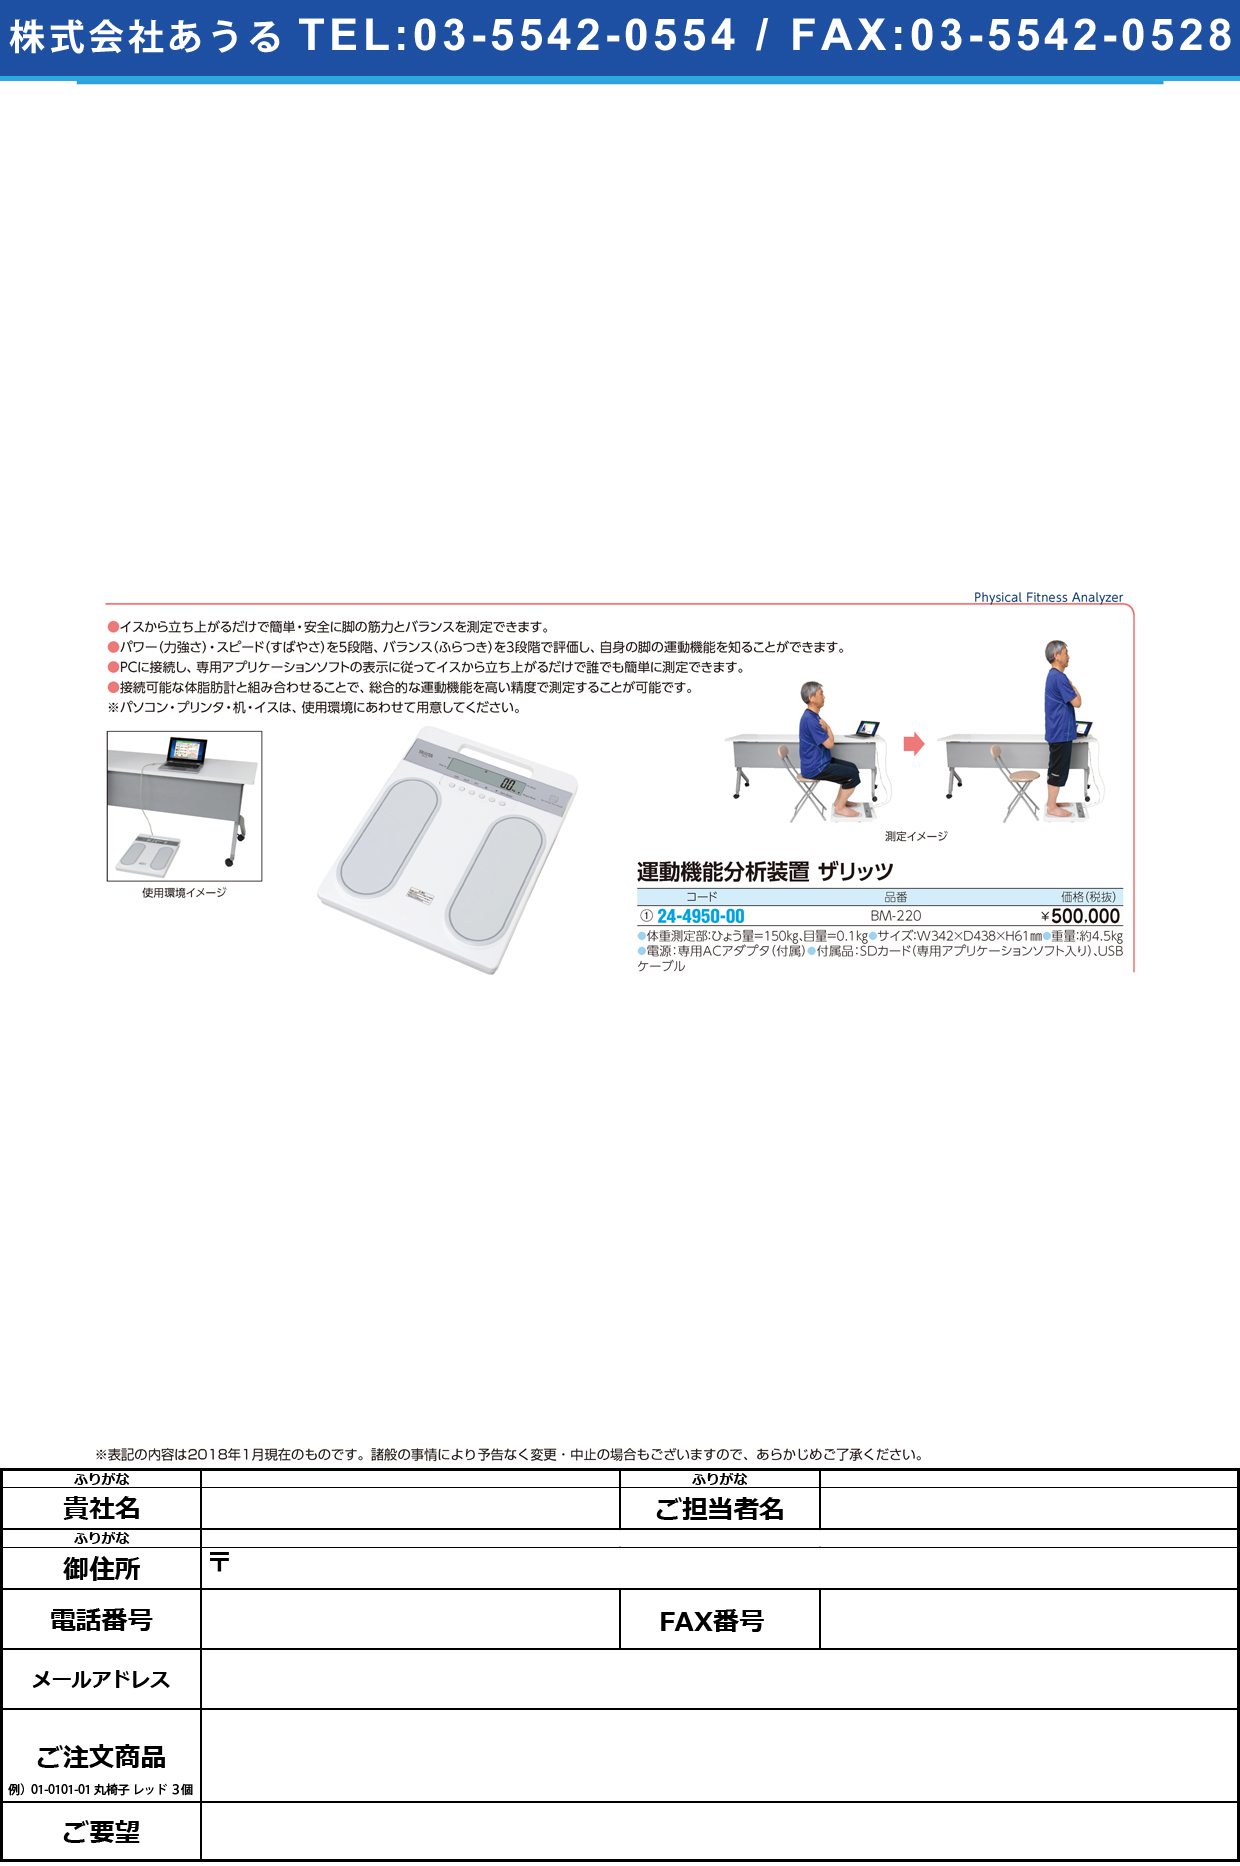 (24-4950-00)運動機能分析装置ｚａＲｉｔｚザリッツ BM-220 ｳﾝﾄﾞｳｷﾉｳﾌﾞﾝｾｷｿｳﾁ(タニタ)【1台単位】【2018年カタログ商品】